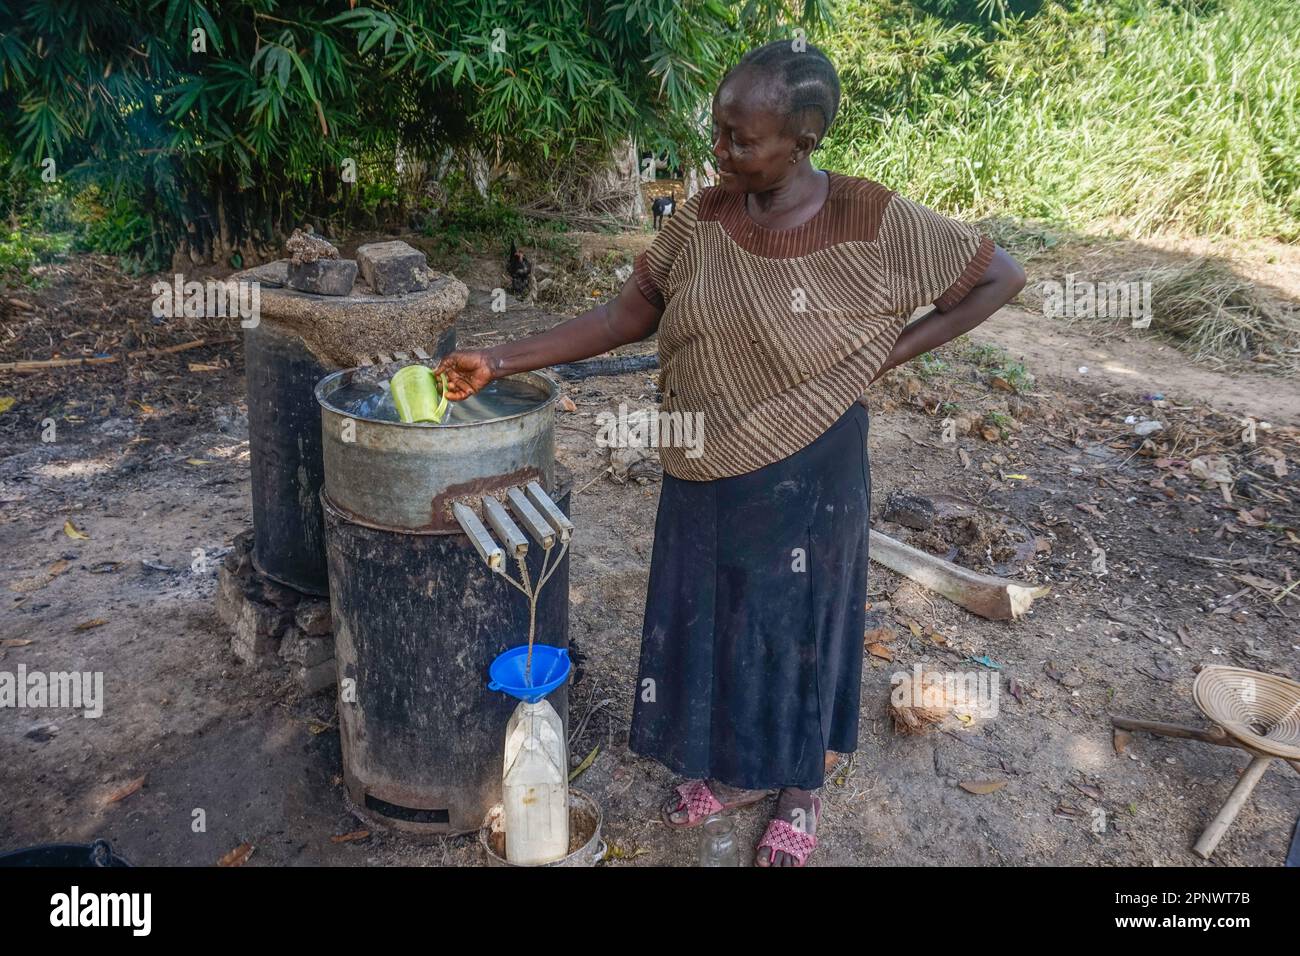 Brigitte Tosani stellt am 17. Mai 2022 in Kisangani, Demokratische Republik Kongo, handwerklich hergestellten Alkohol her, auch bekannt als Lotoko. Tosani, der seit mehr als 15 Jahren Lotoko herstellt, sagt, dass die fermentierten Maniok-Nebenprodukte in Destillationen aus Ölfässern destilliert werden. (Zita Amwanga/Global Press Journal) Stockfoto